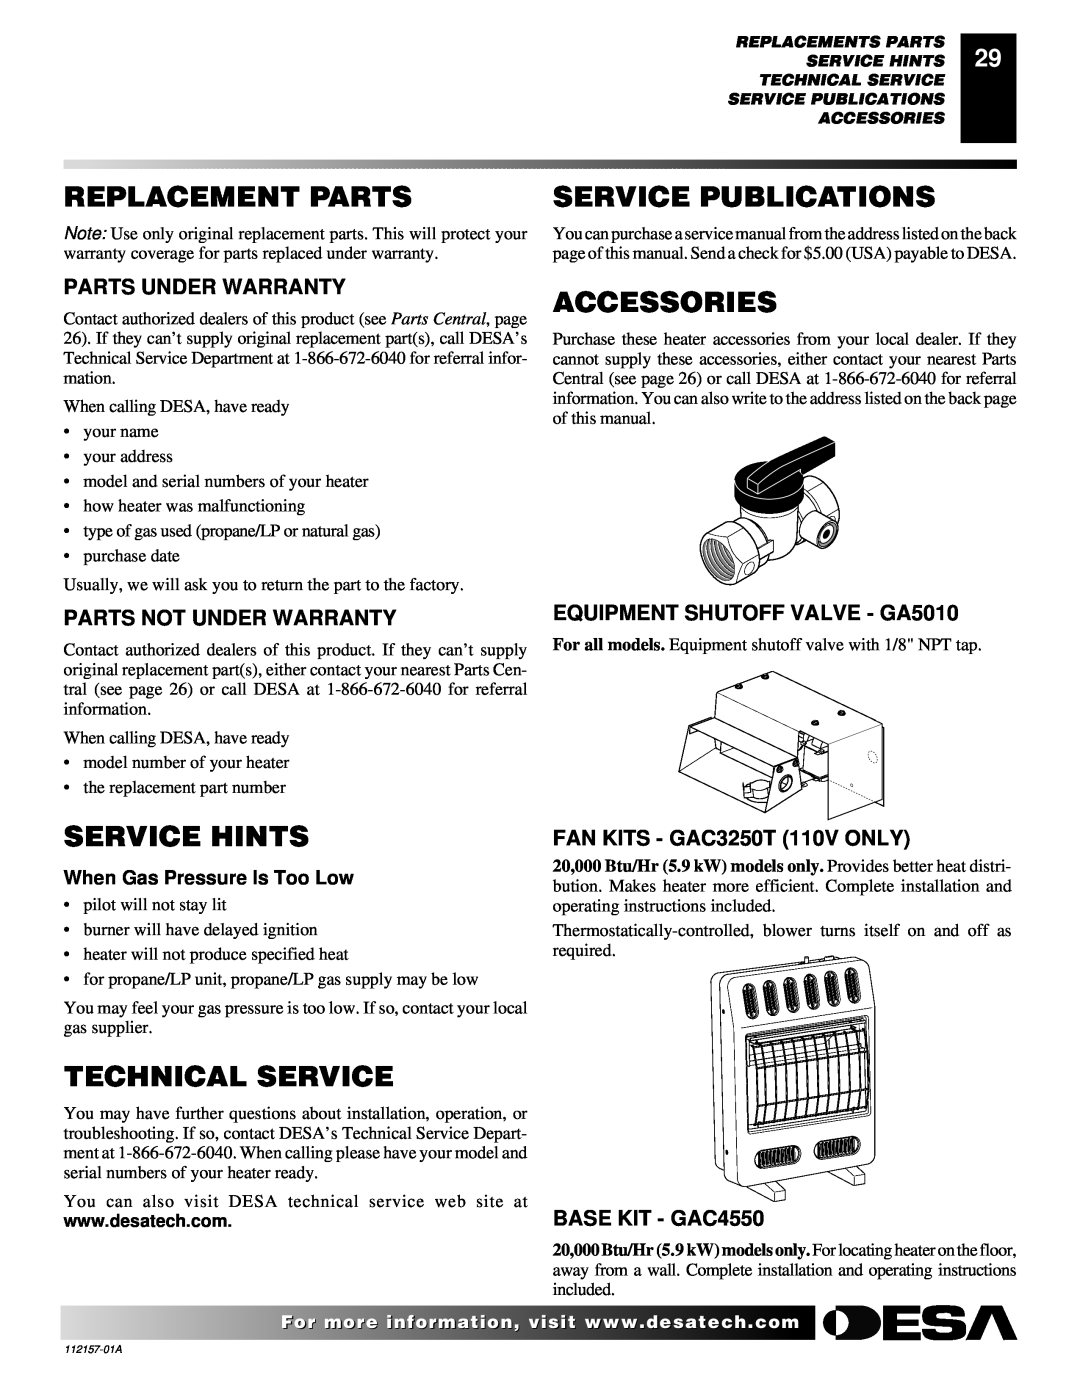 Desa GCP20T Replacement Parts, Service Publications, Accessories, Service Hints, Technical Service, Parts Under Warranty 